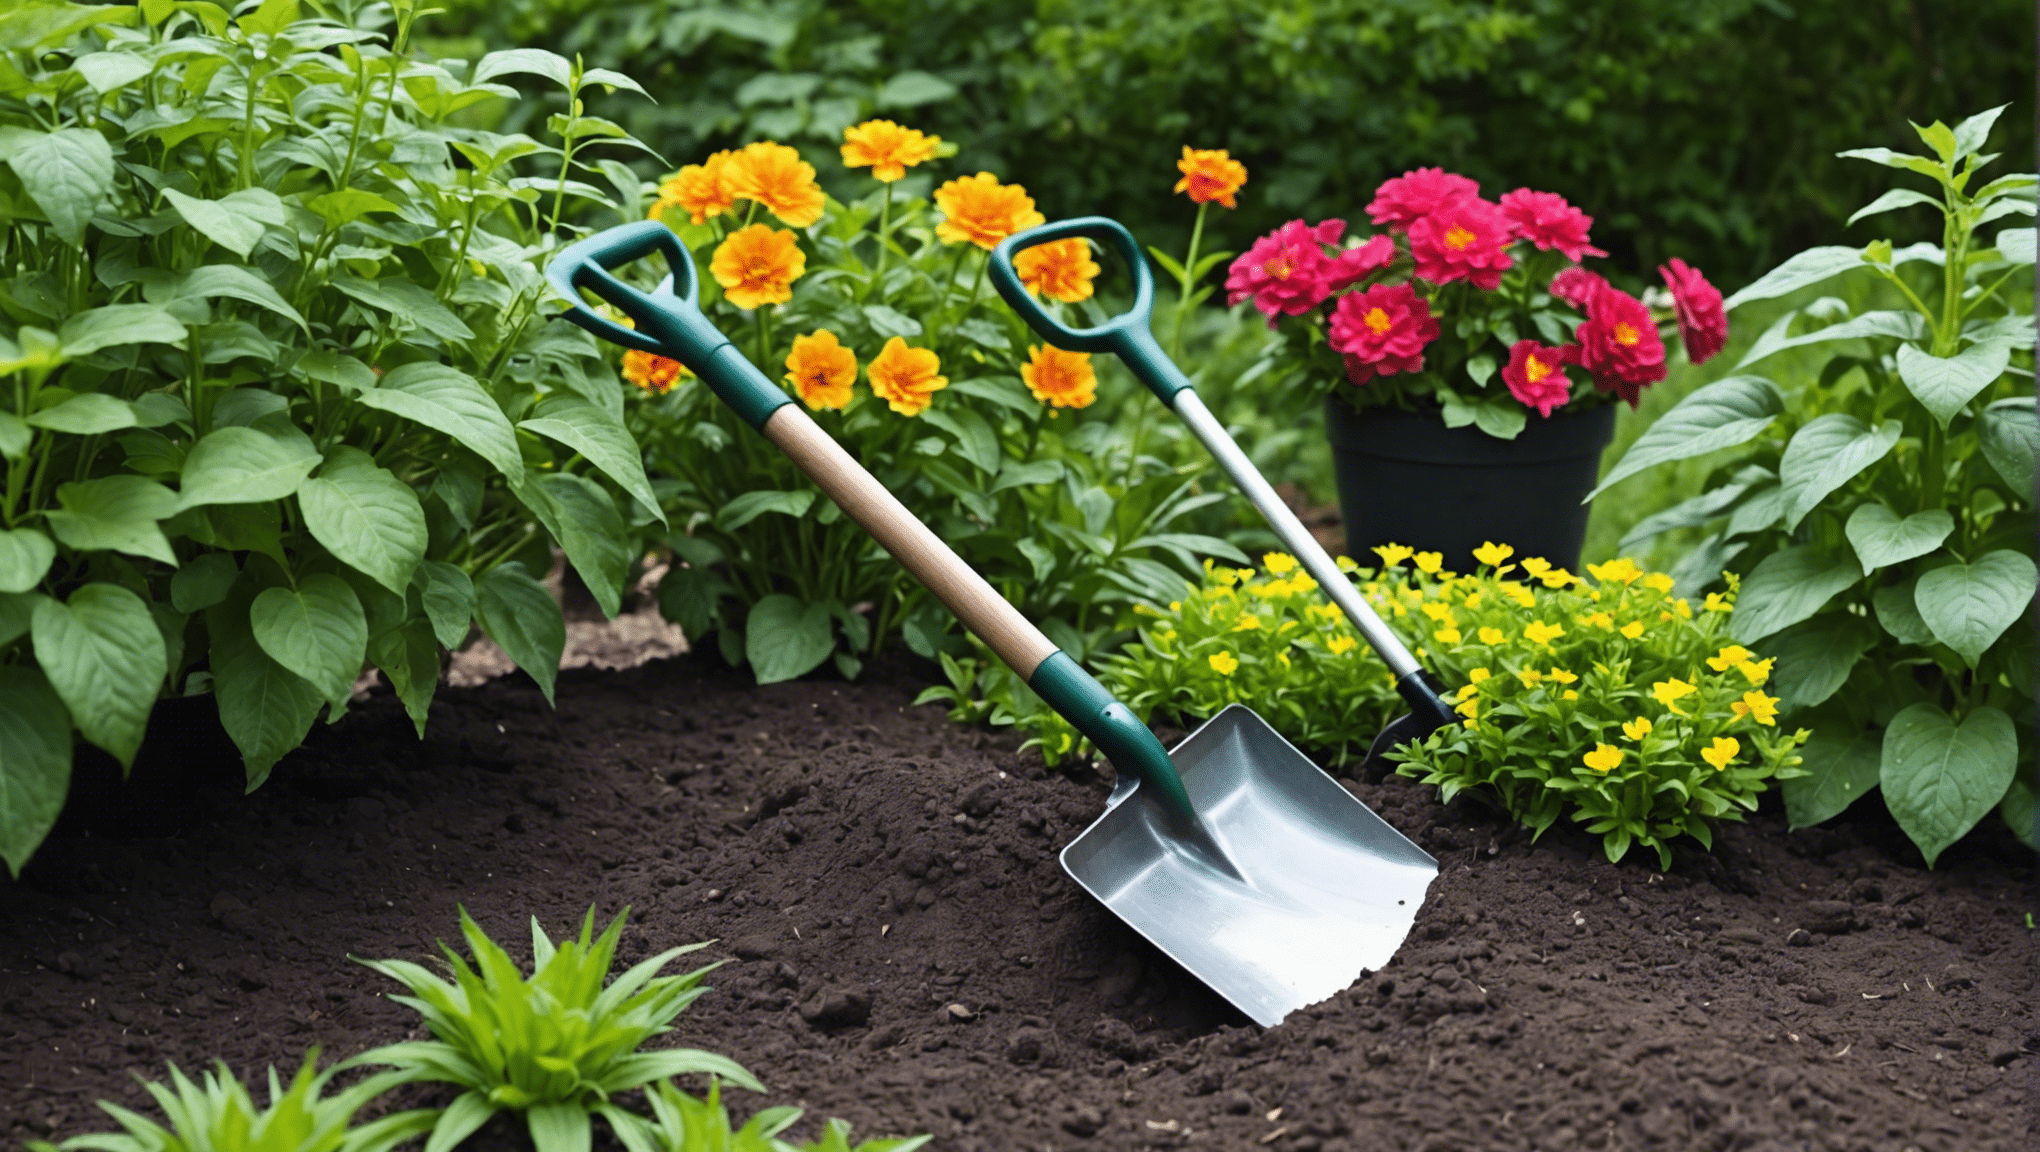 trova la piccola pala da giardino ideale per tutte le tue esigenze di giardinaggio con la nostra selezione di strumenti durevoli e di alta qualità.